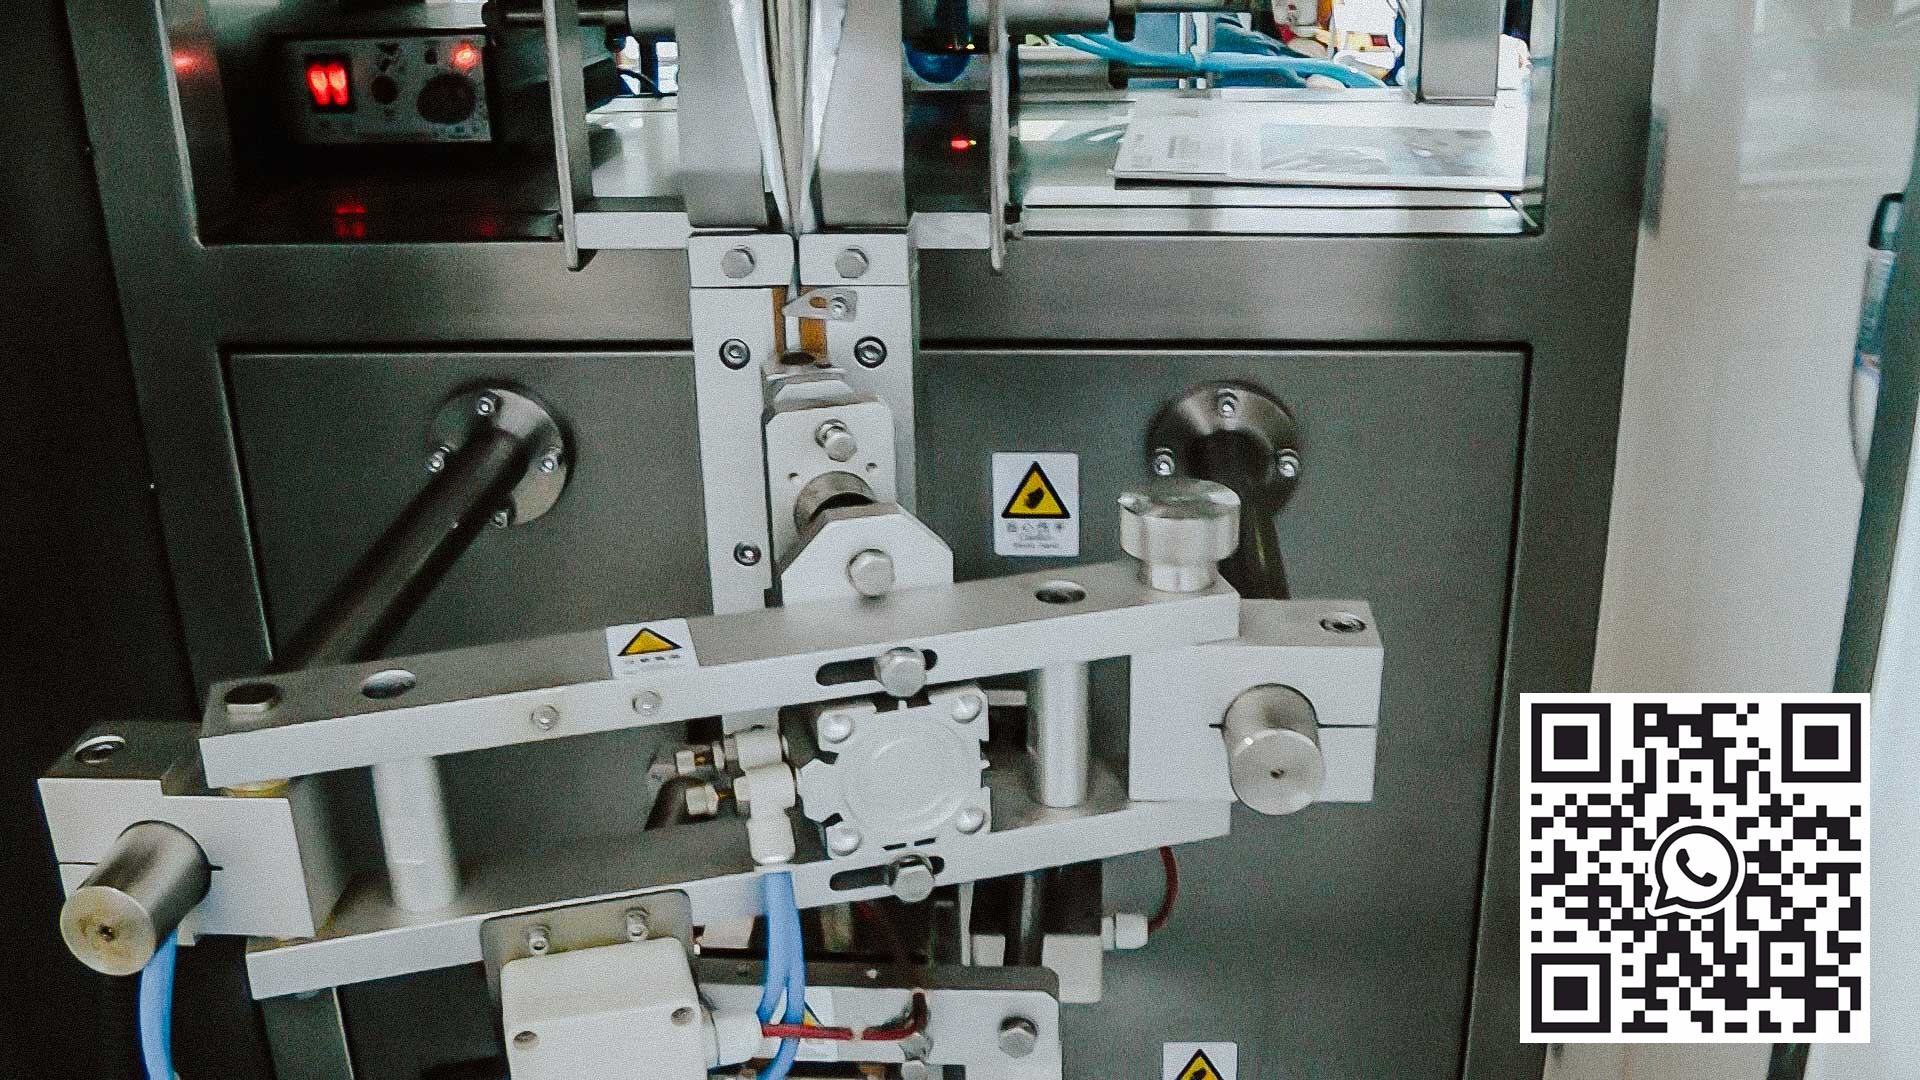 آلة تعبئة أوتوماتيكية لجرعات المسحوق في أكياس التعبئة والتغليف البلاستيكية